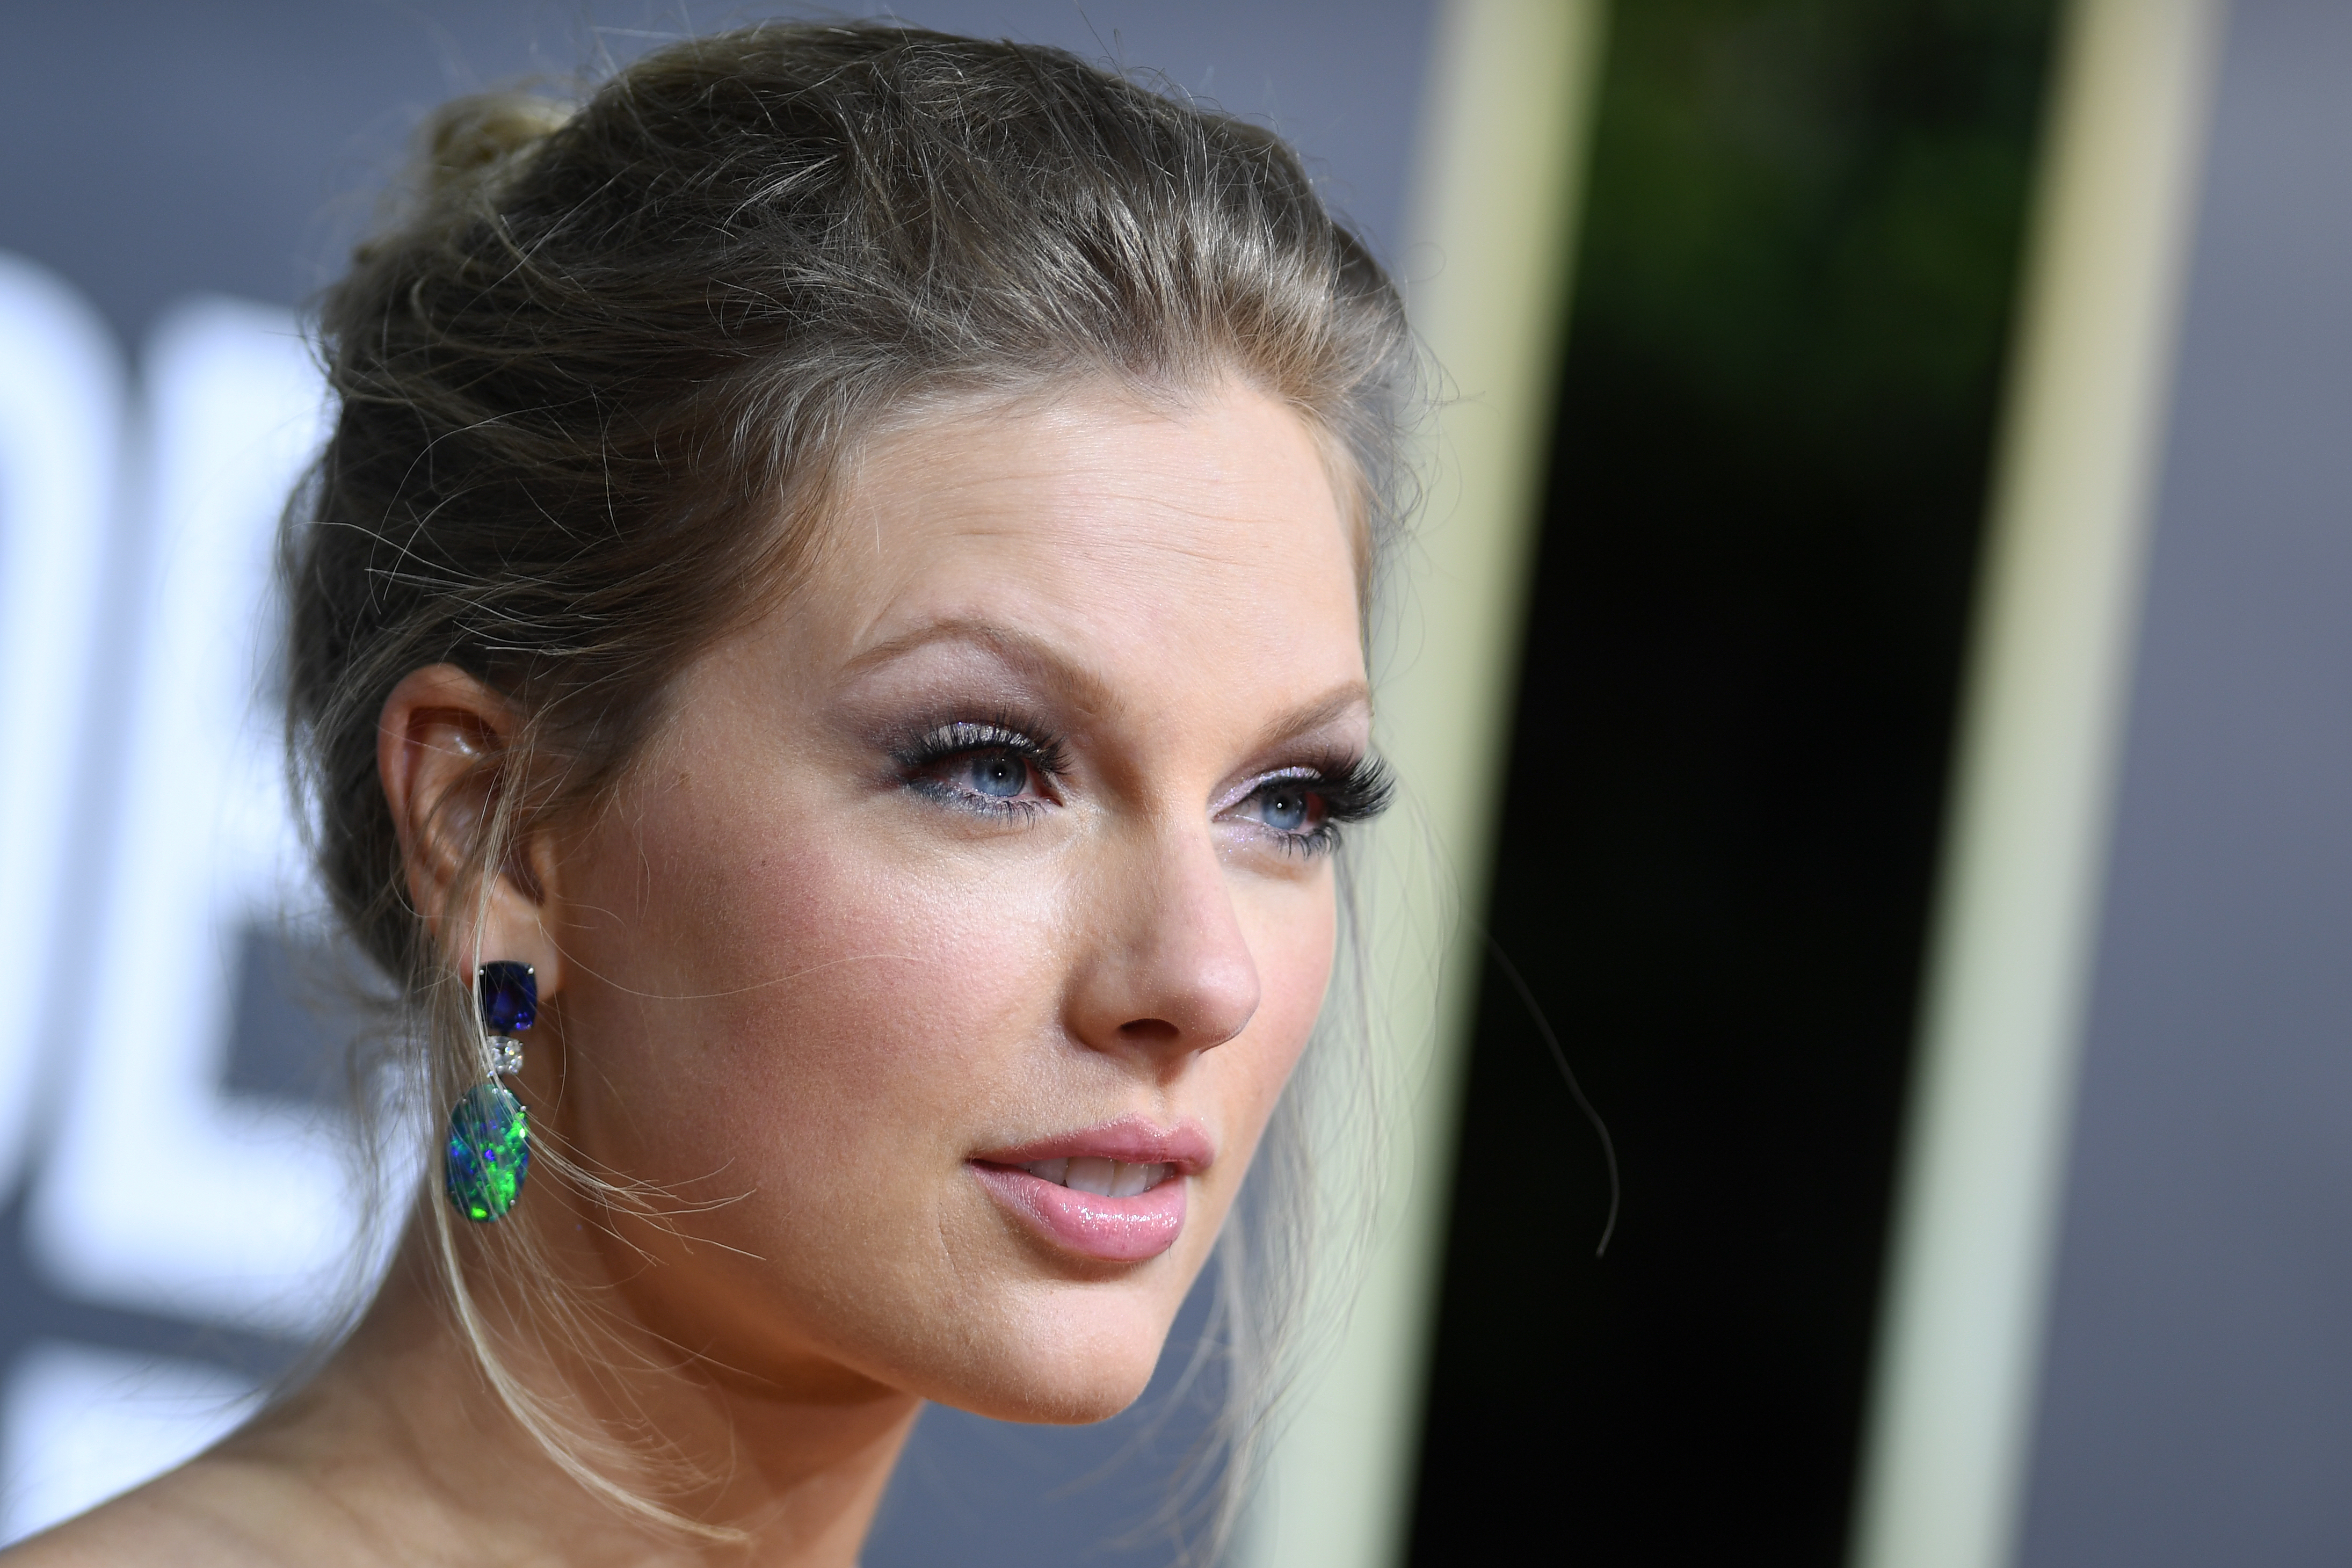 Taylor Swiftről neveztek el egy nemrég felfedezett ezerlábút